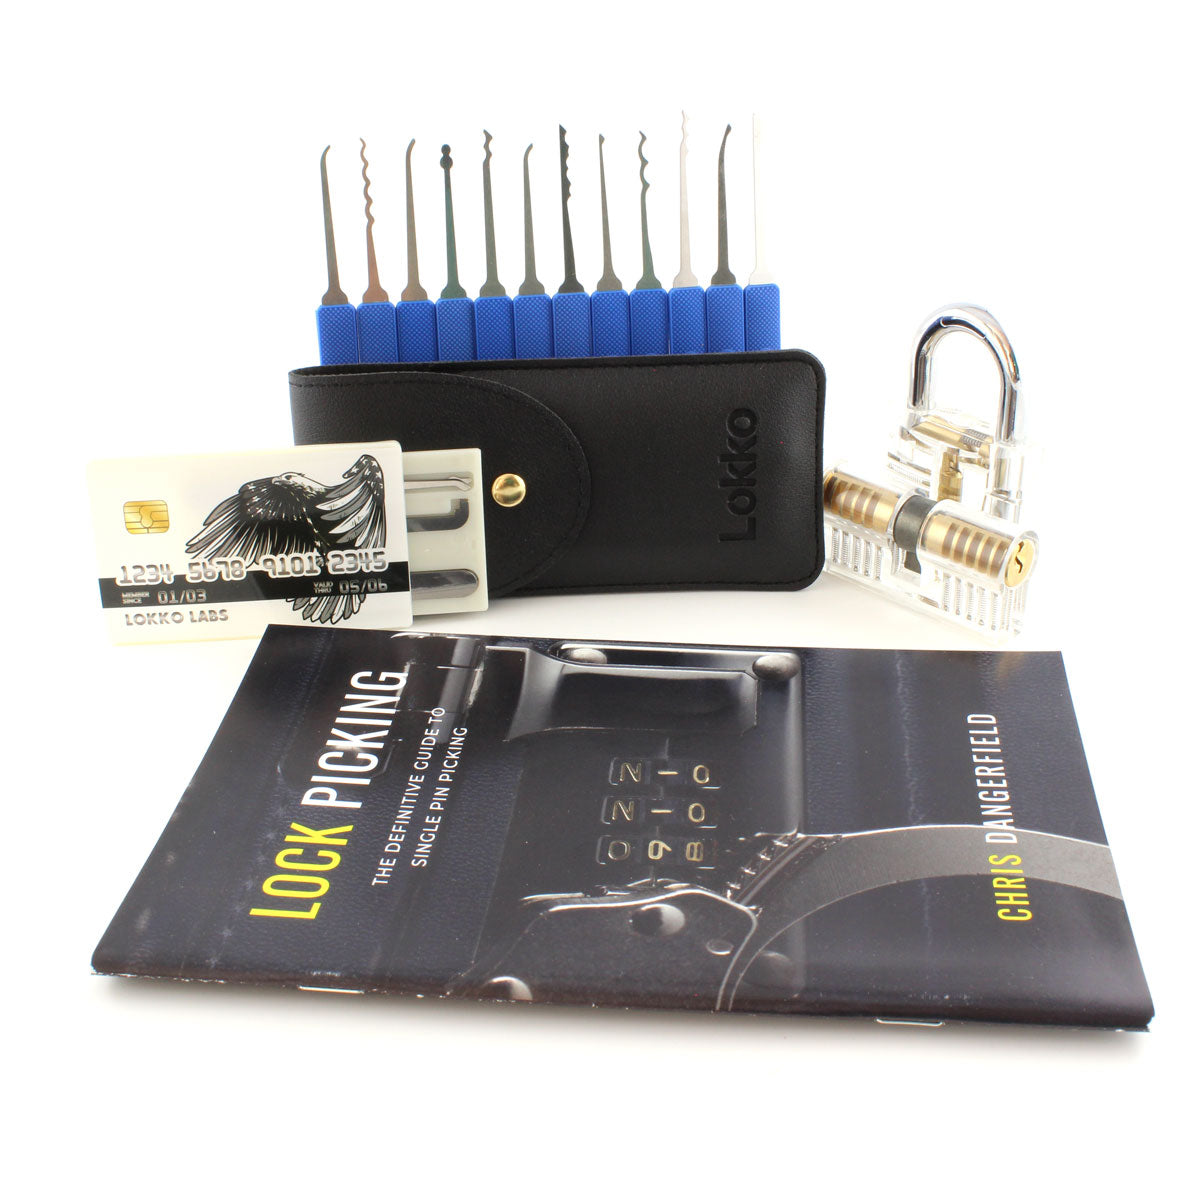 DIY Lockpicking: A Comprehensive Lockpicking Guide (Paperback)